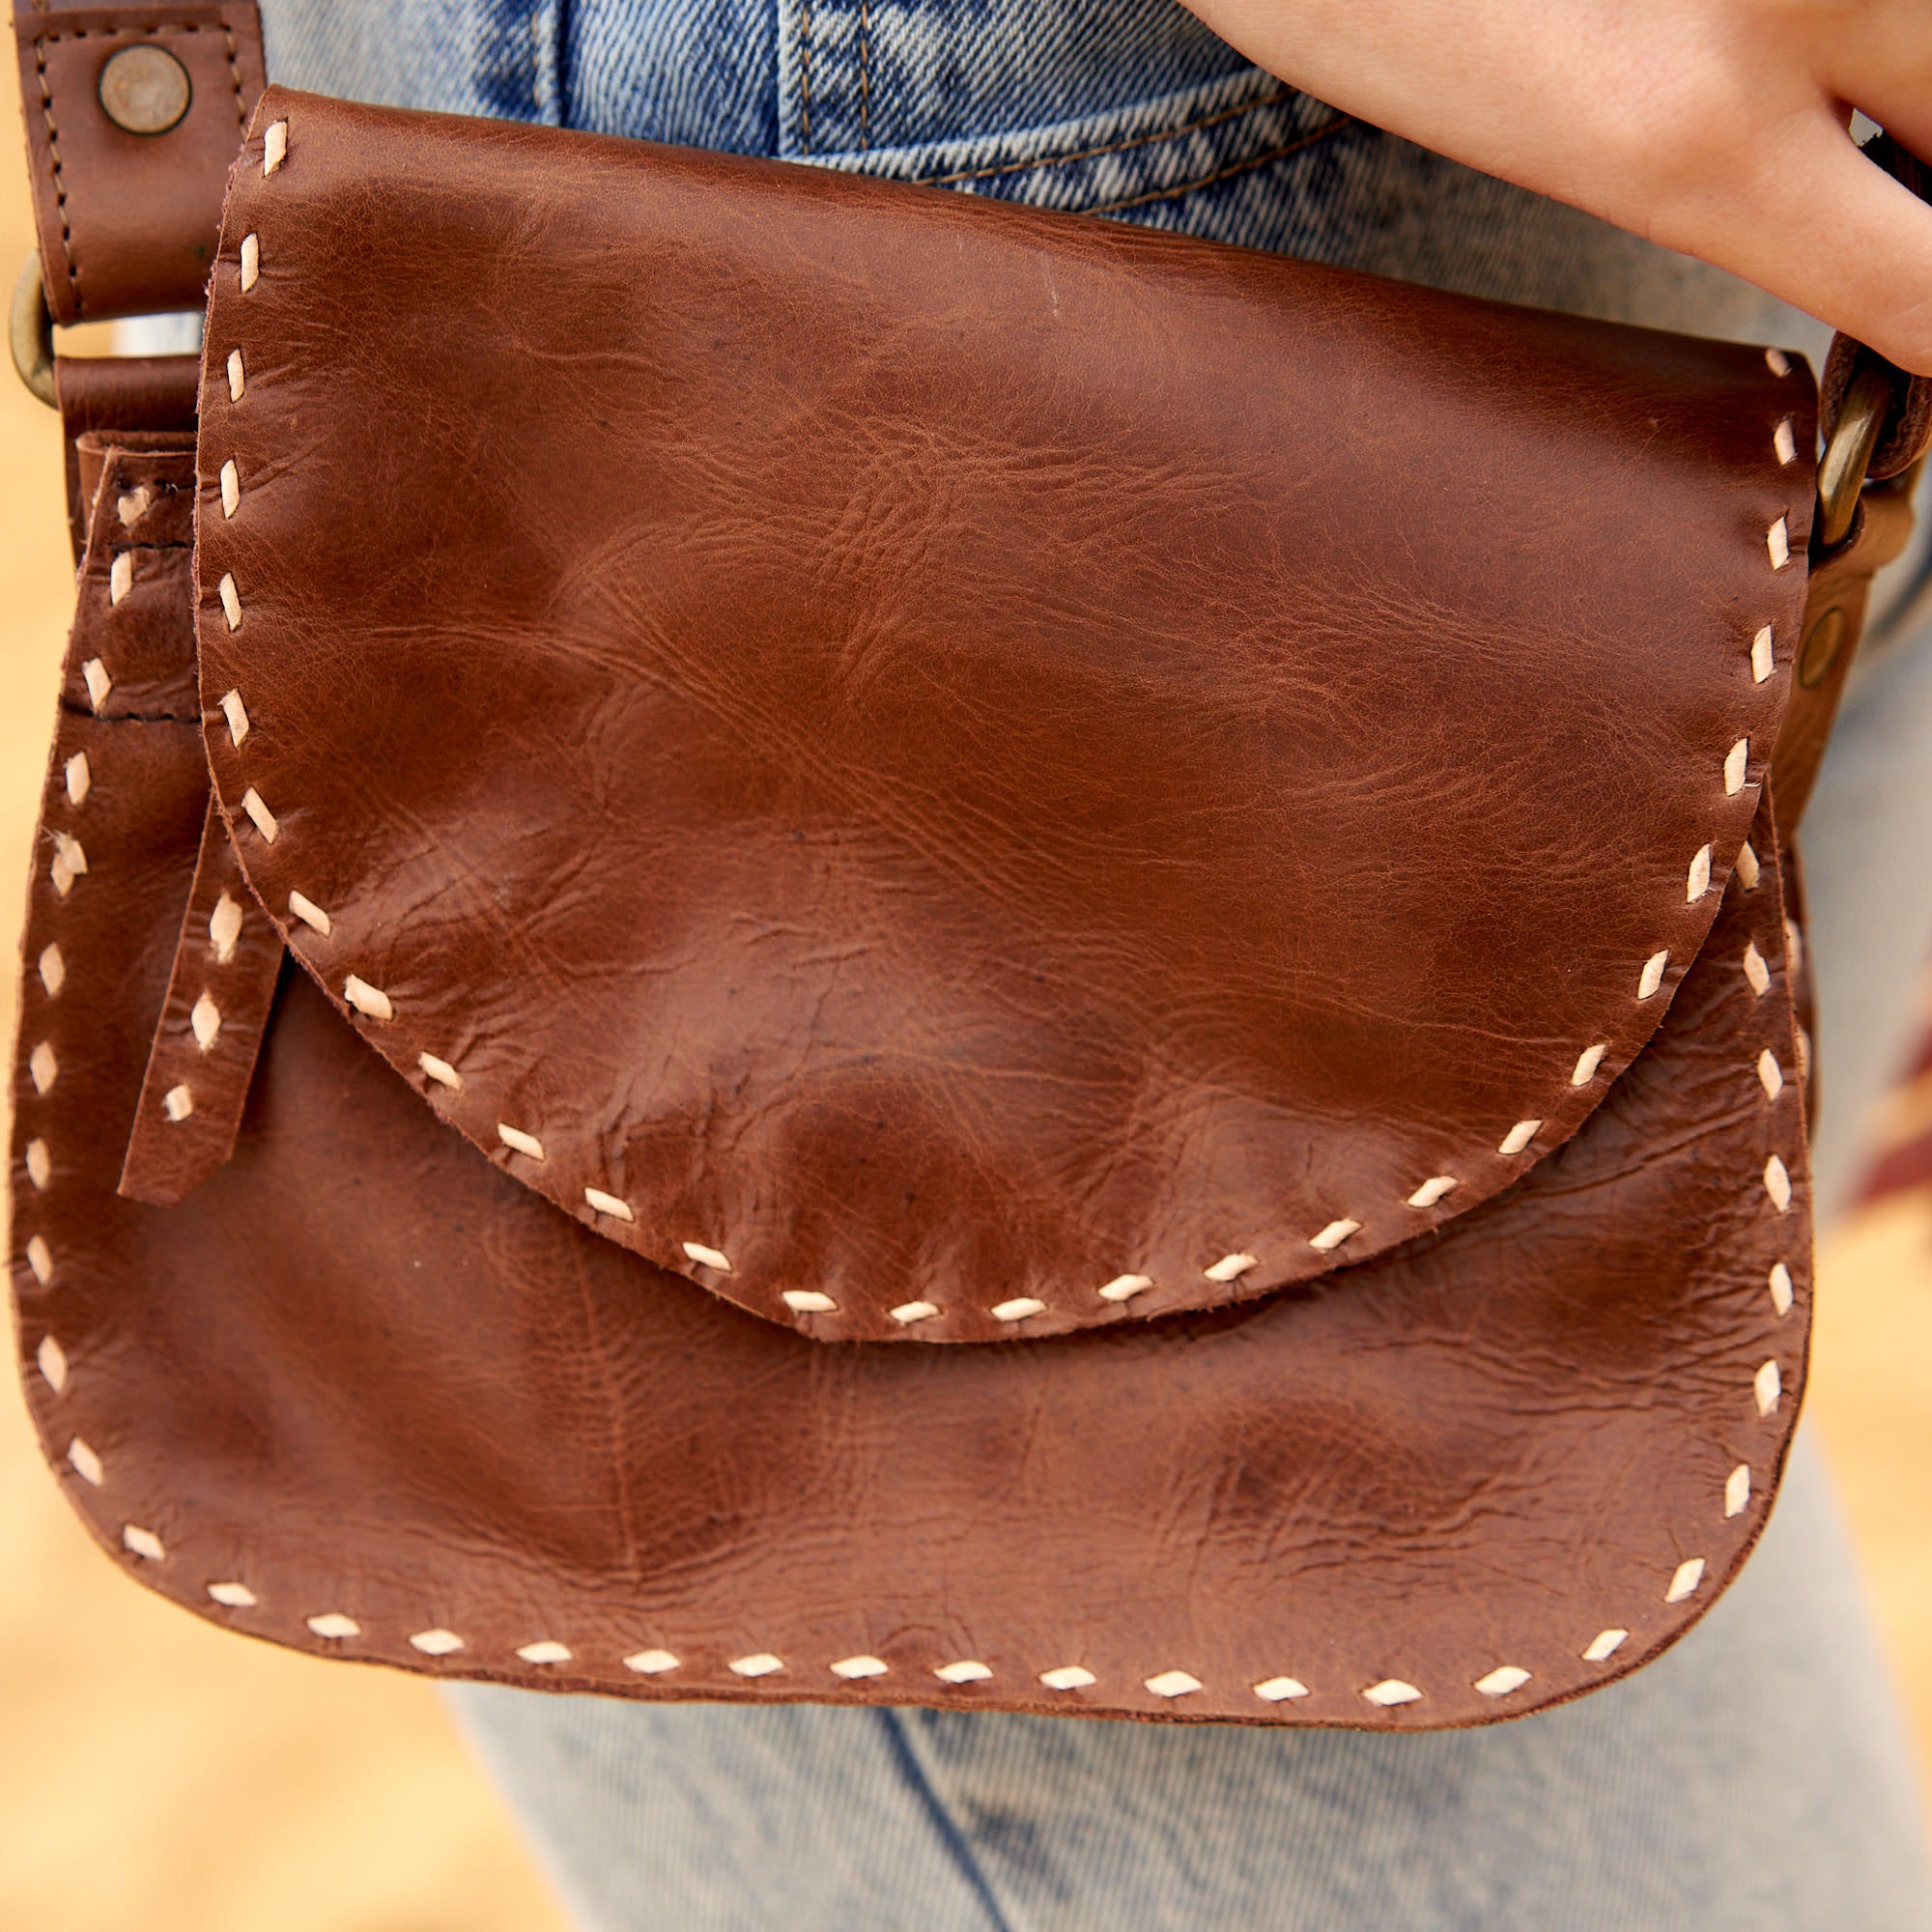 Versatile Leather Travel Messenger Bag - Crossbody Shoulder Satchel